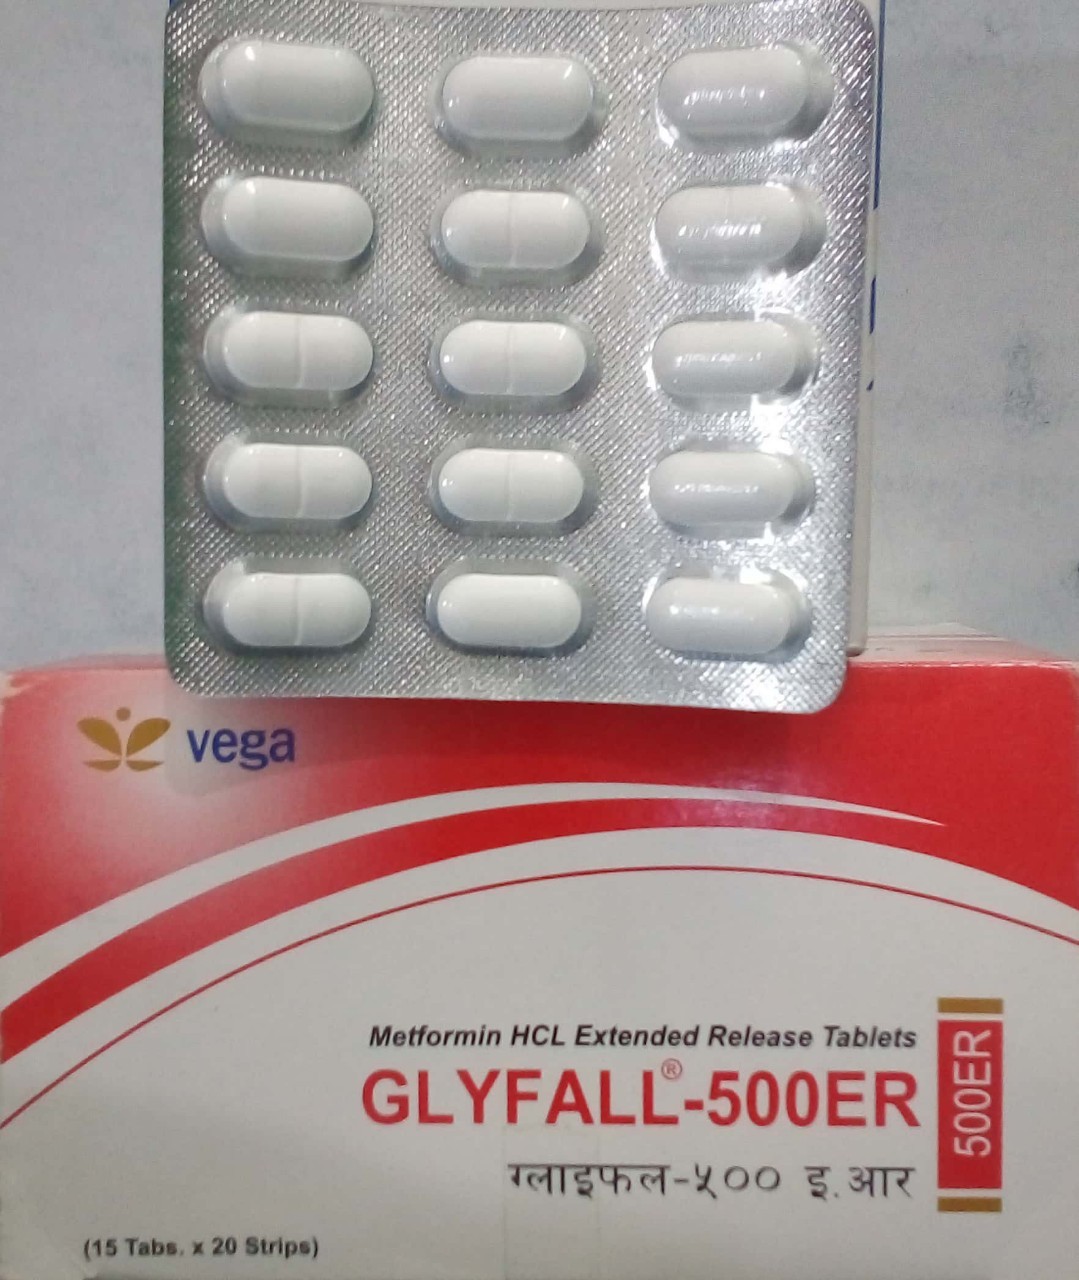 Glyfall-500er